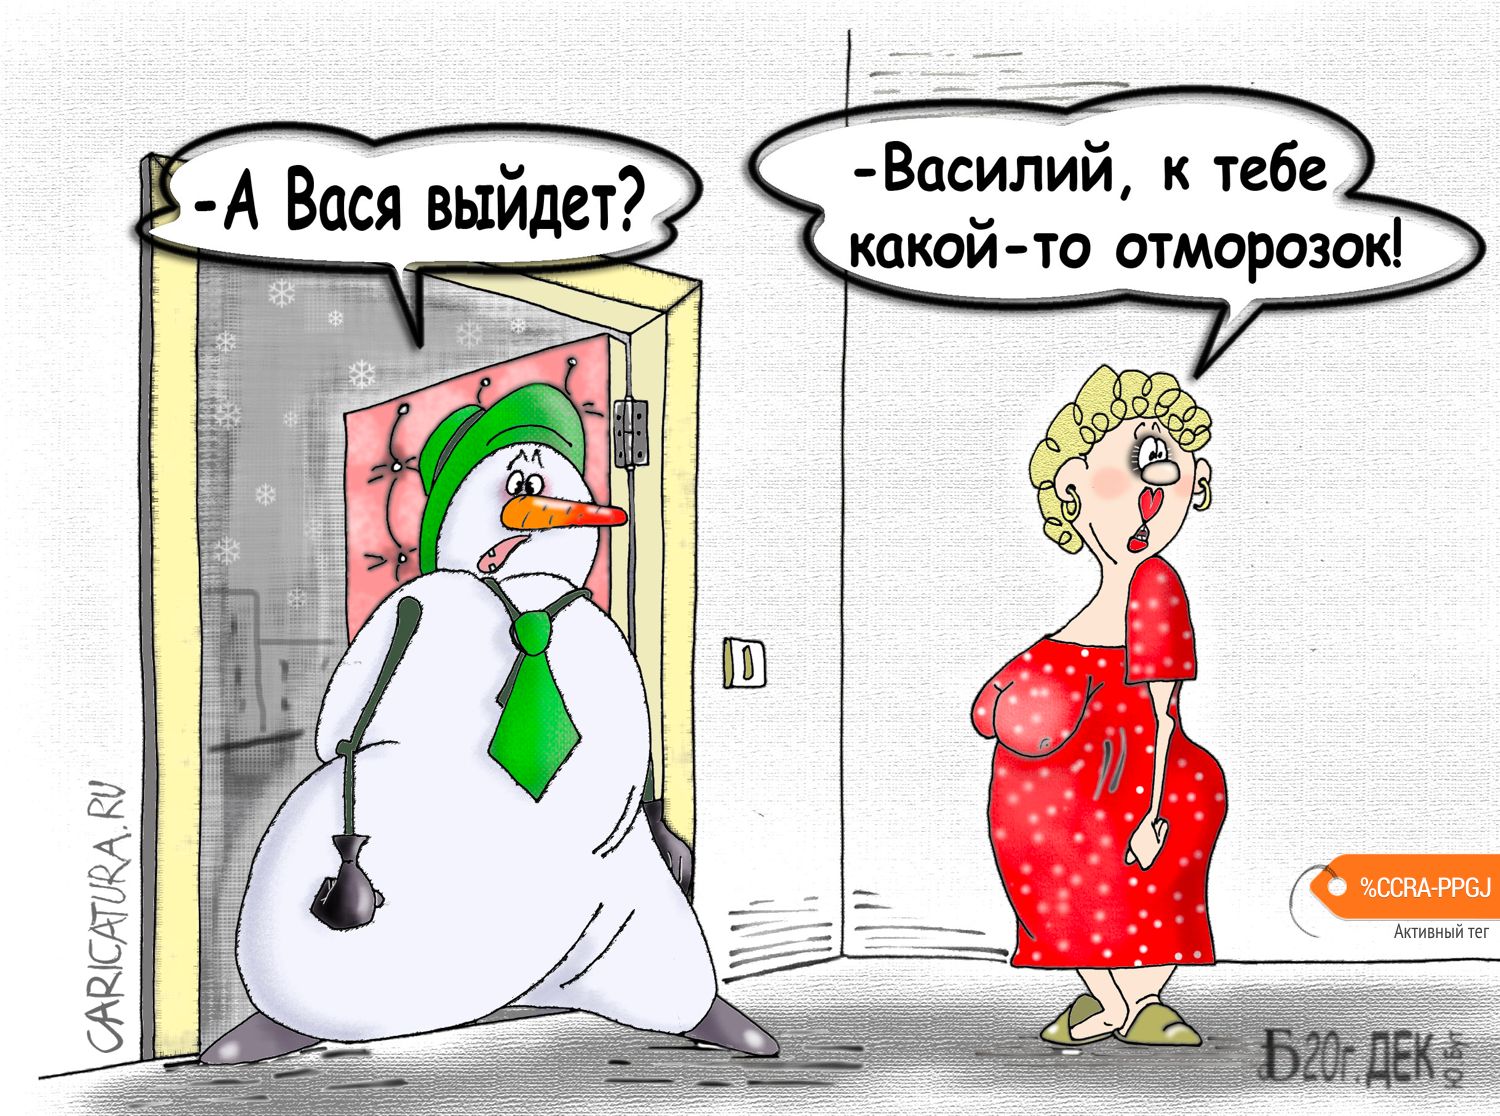 Карикатура "Про отморозность", Борис Демин